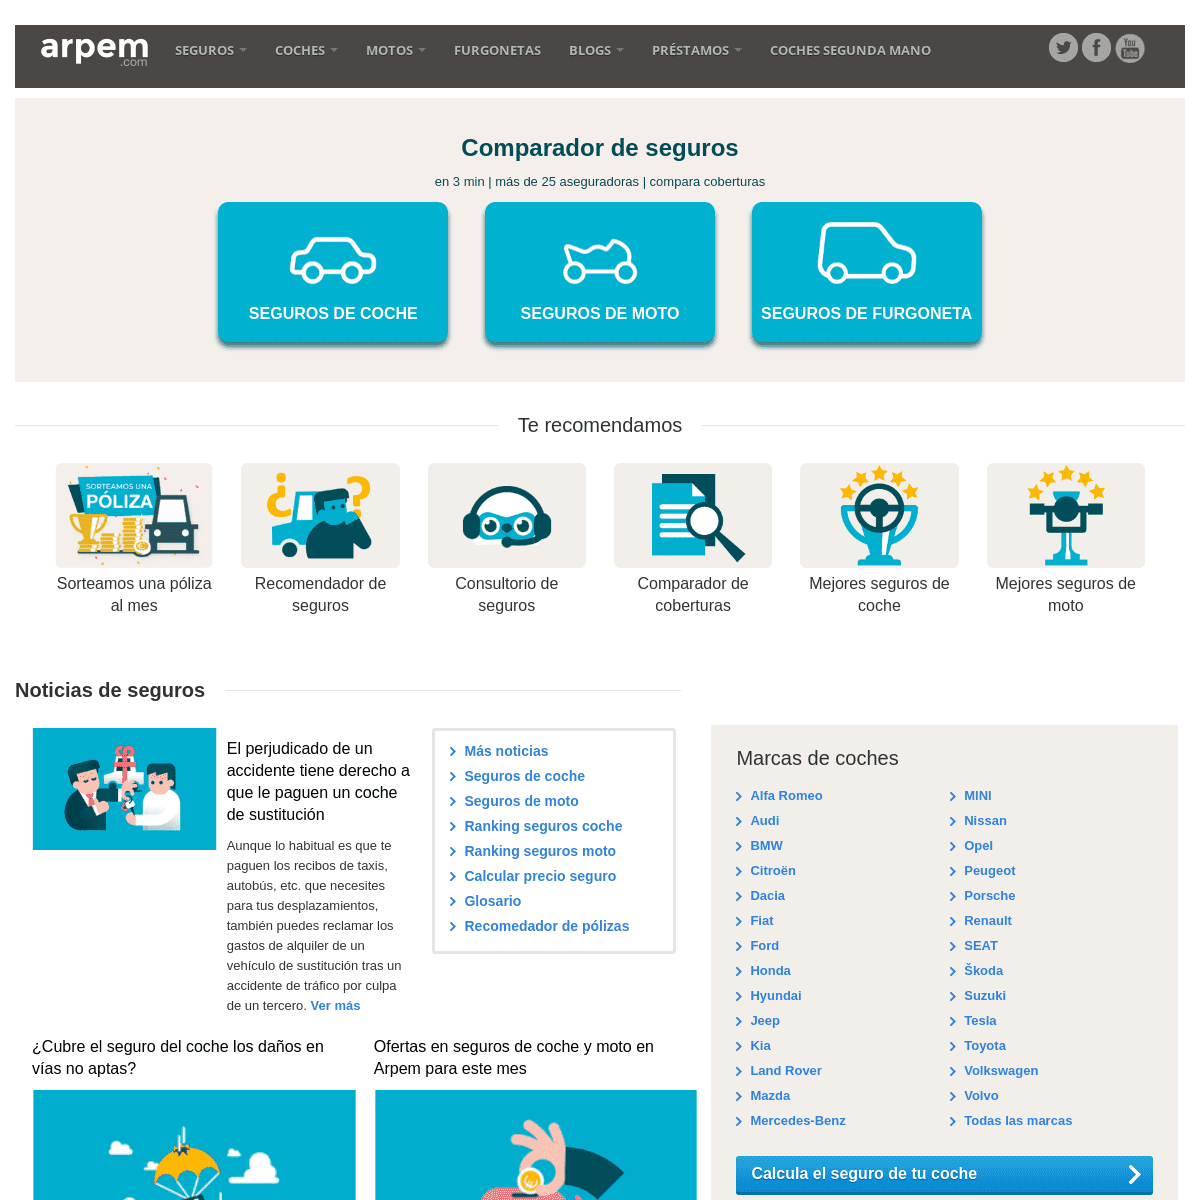 A complete backup of https://arpem.com